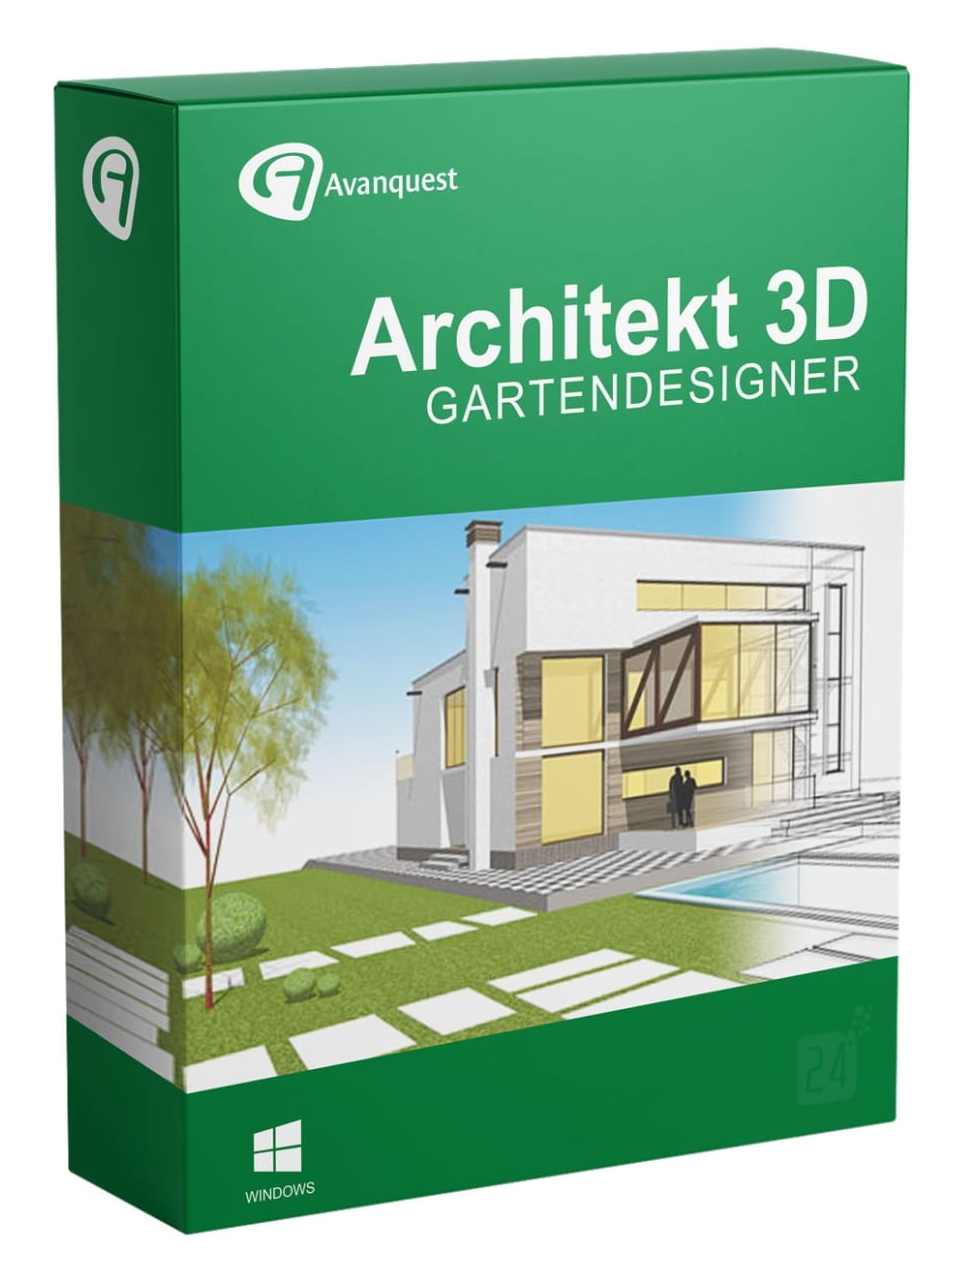 Bild von Architekt 3D 20 Gartendesigner